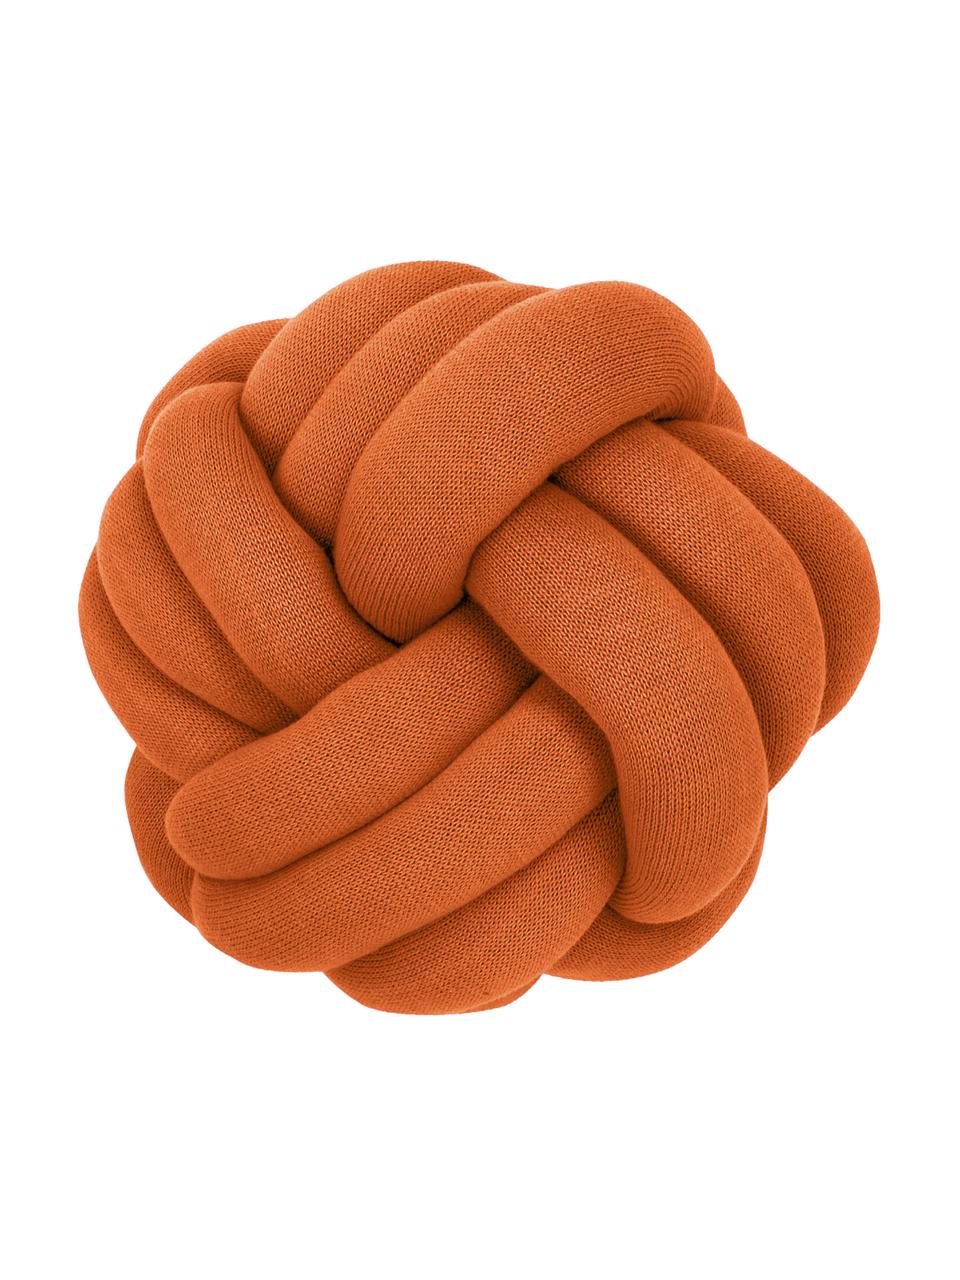 Cuscino annodato color terracotta Twist, Terracotta, Ø 30 cm